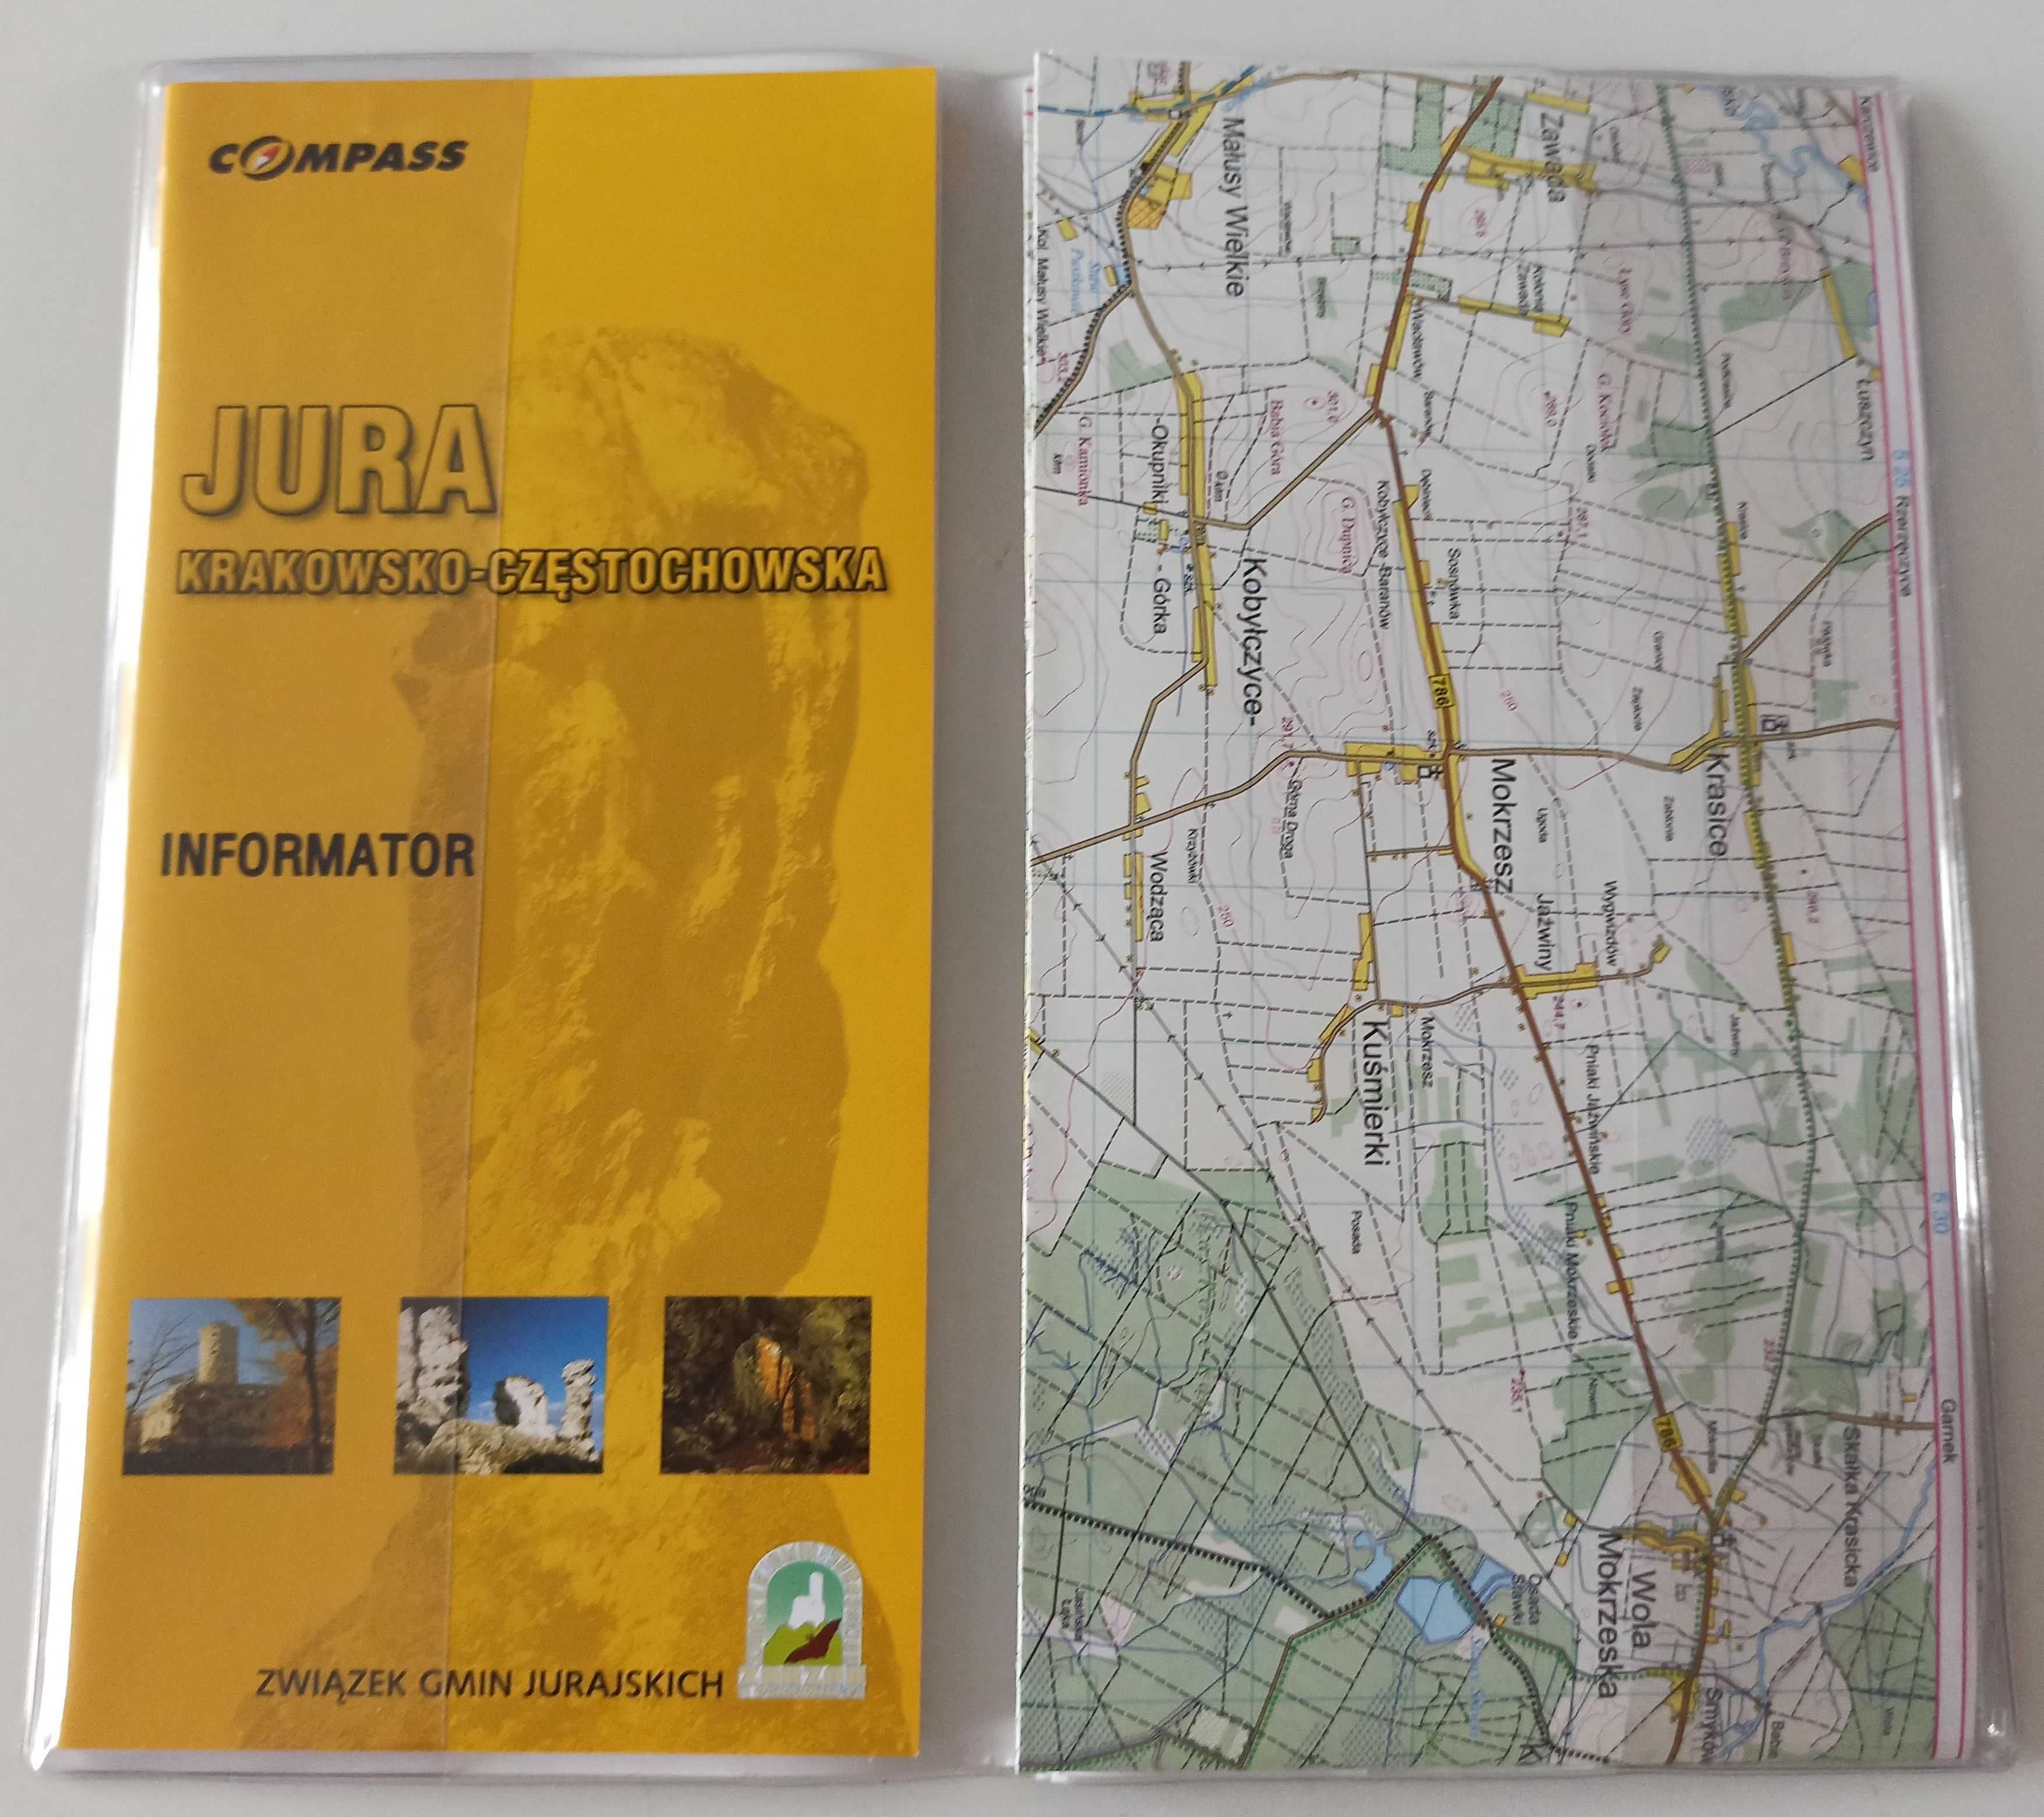 Jura krakowsko-częstochowska 2x mapy przewodnik turystyczny 3 sztuki